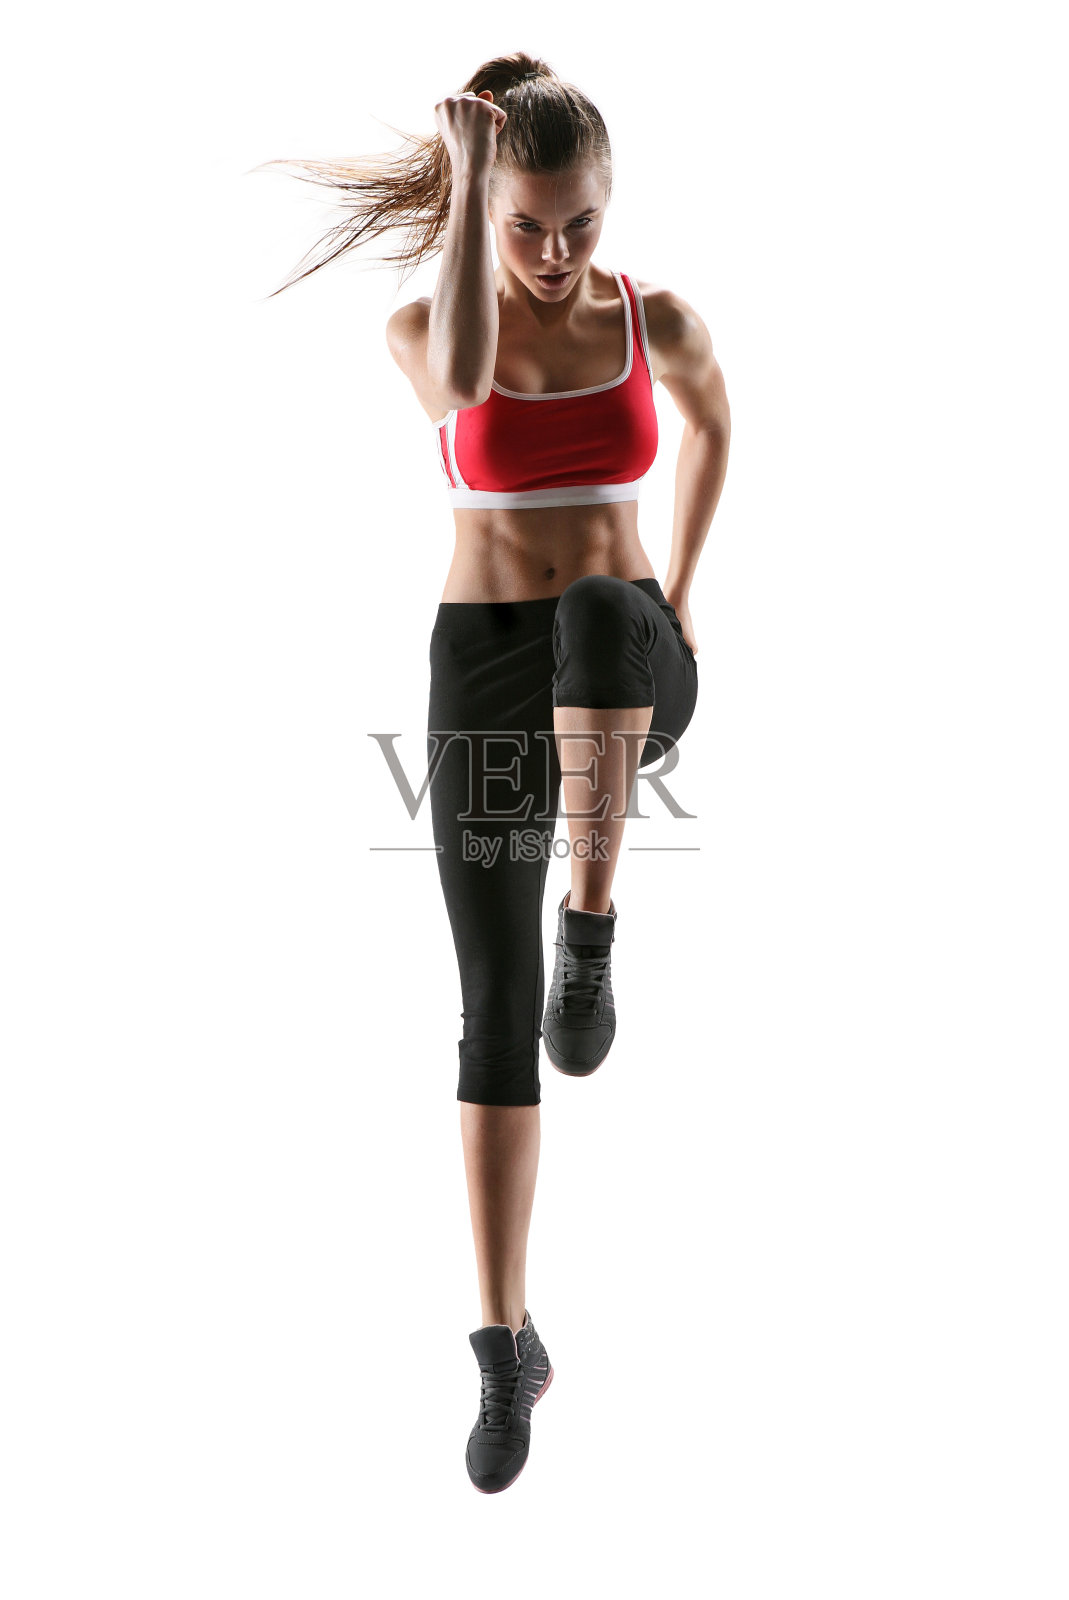 健身健美操的女人。新鲜充满活力的女性健身教练照片摄影图片